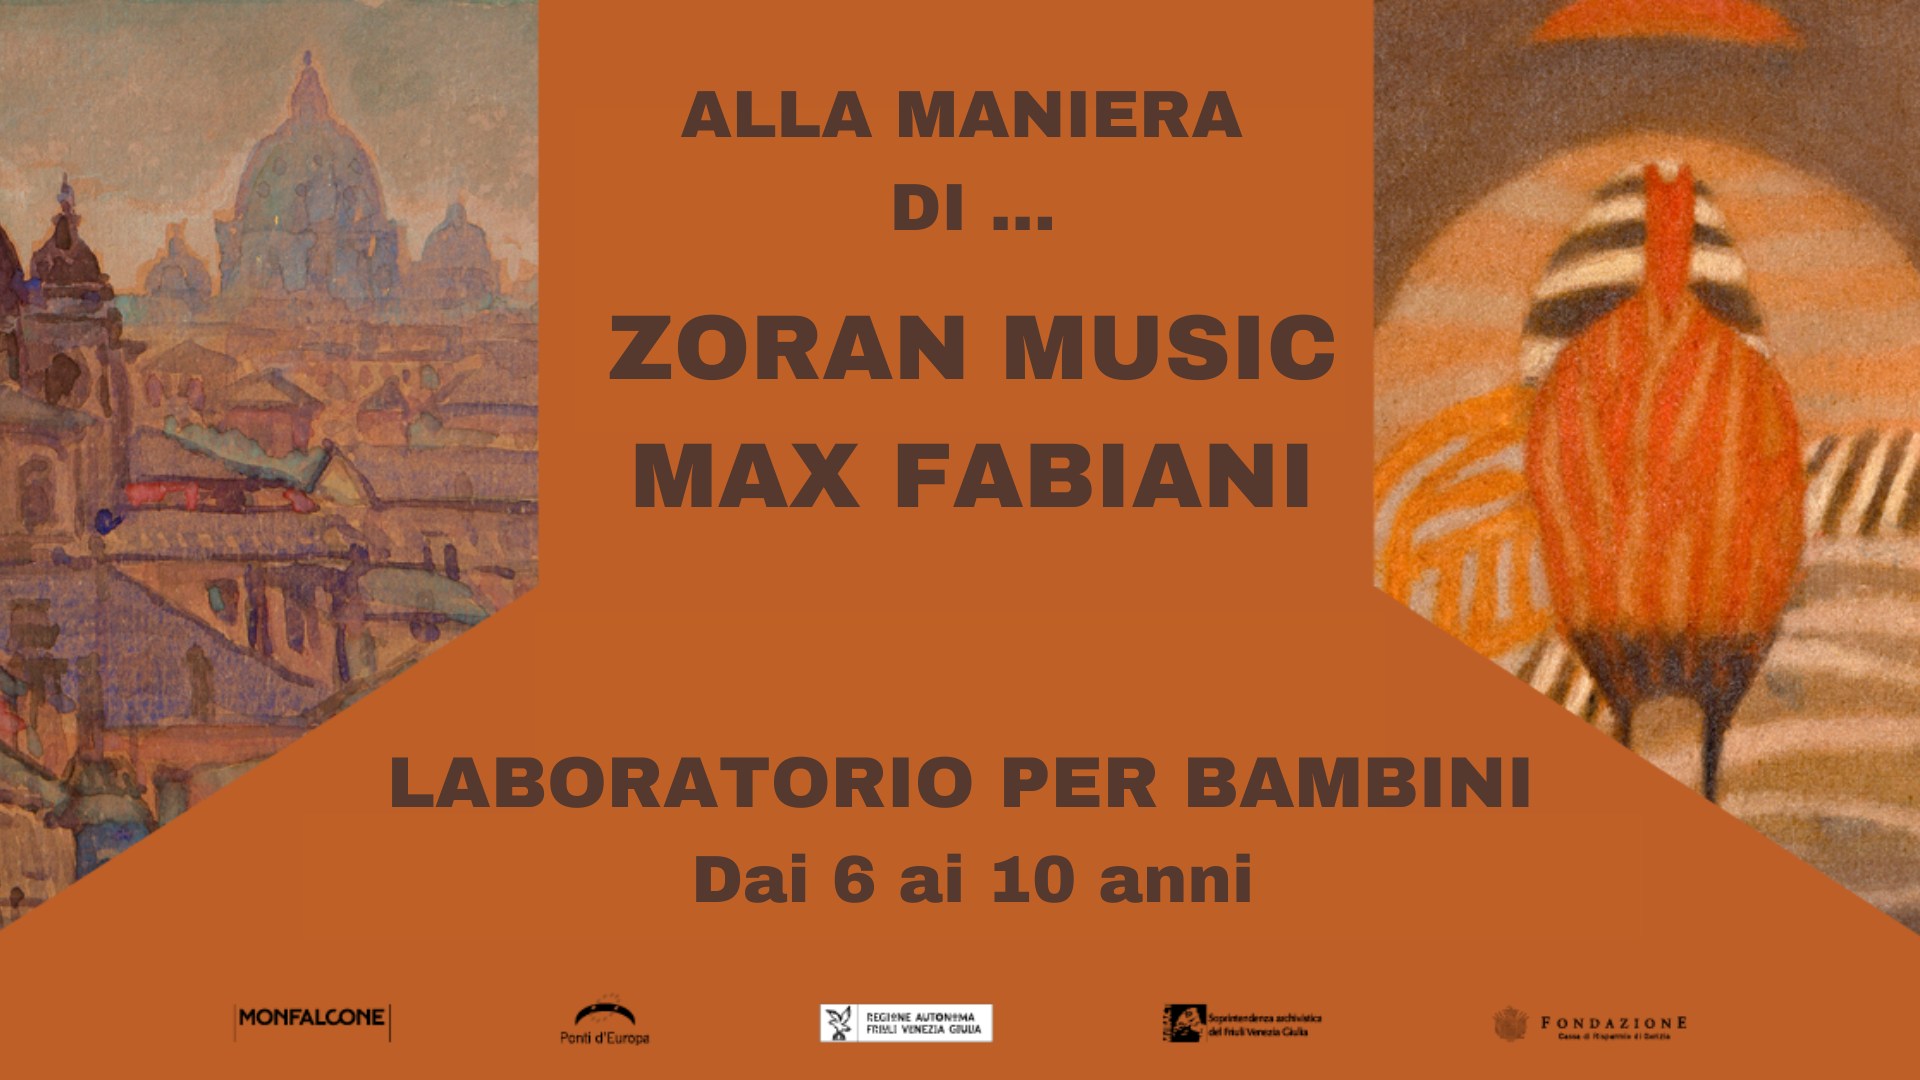 Laboratori didattici per bambini su Zoran Music e Max Fabiani - EventiFVG.it